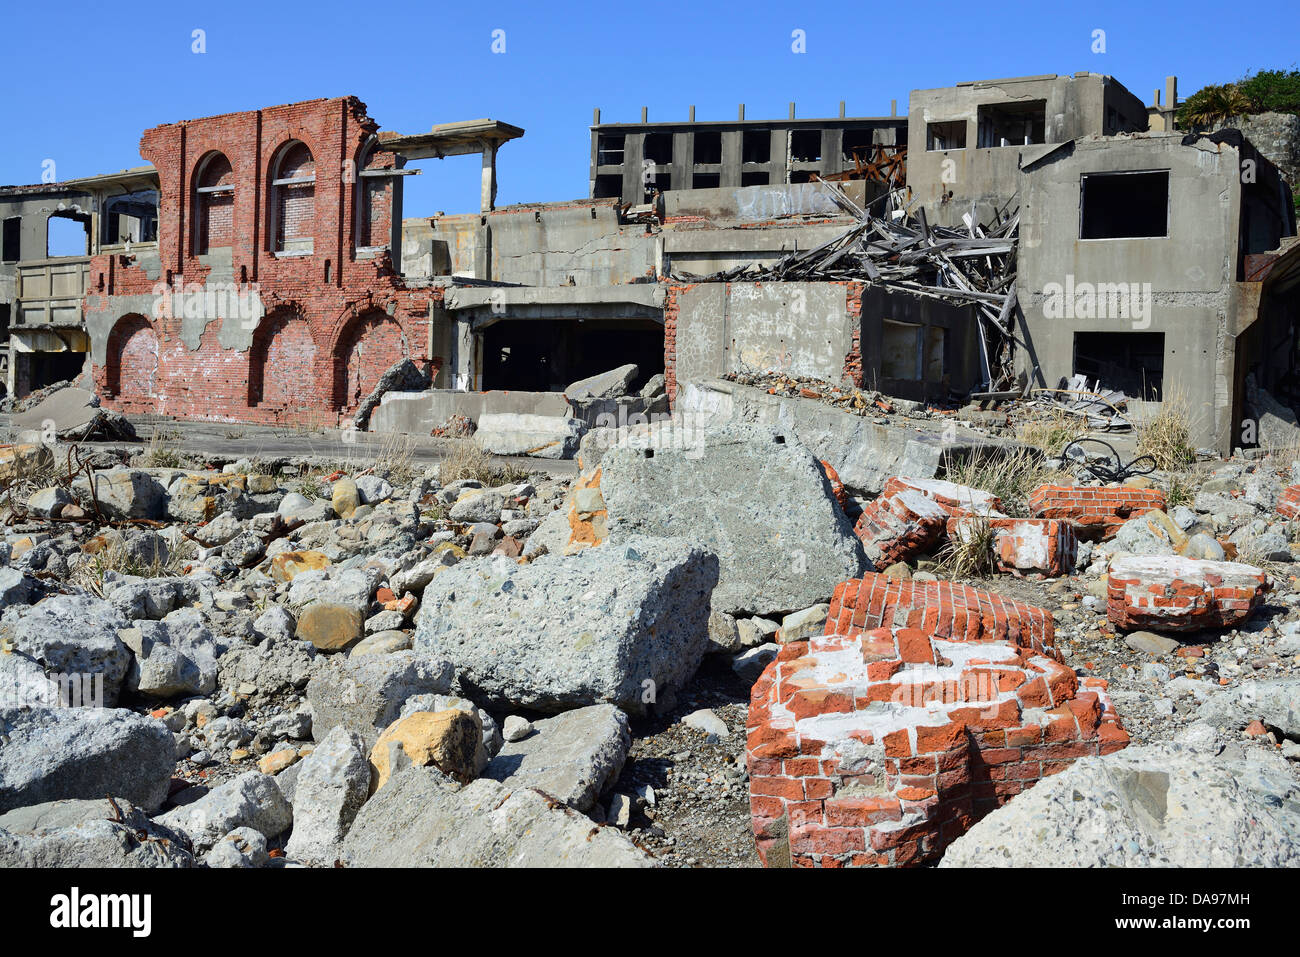 Unesco, Abandoned, Archaeological Site, Archaeology, Archeology, Architecture, Asia, Battleship Island, Coal Mining, Day, Daytim Stock Photo